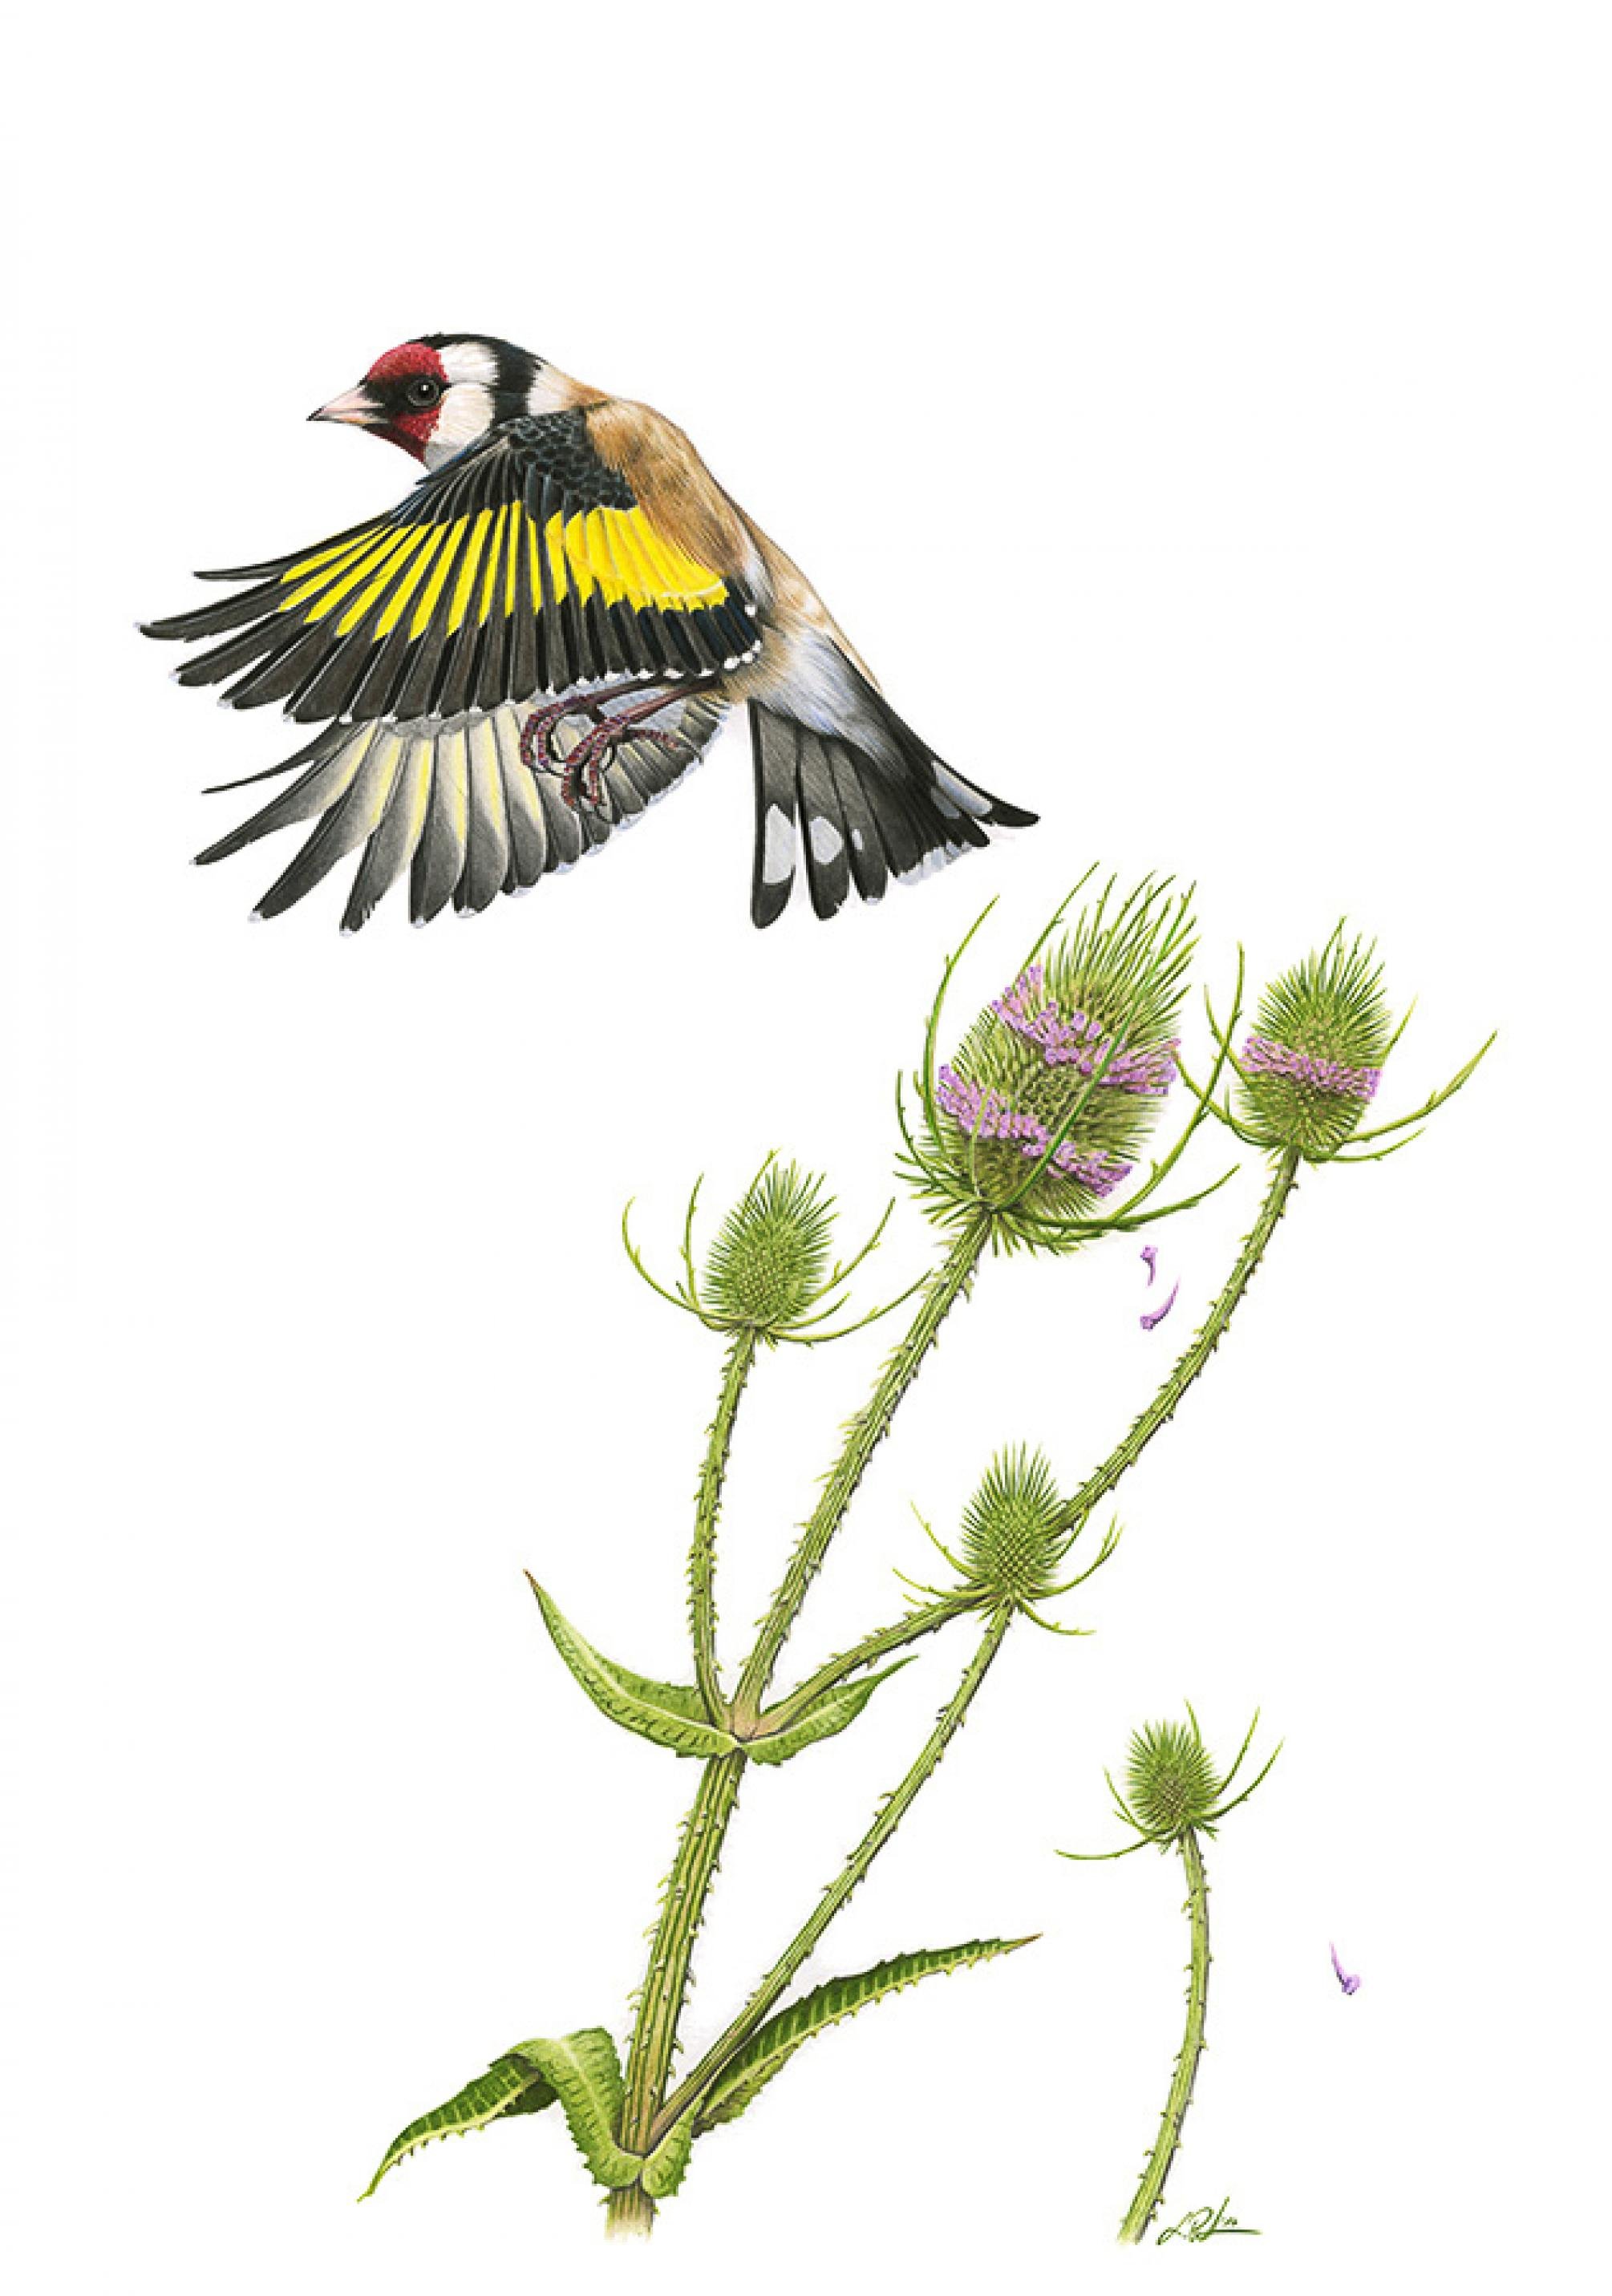 Ein kleiner Vogel mit rotem Gesicht und schwarz-gelben Flügeln hebt von einer Distel mit lavendelfarbenden Ringen um den Blütenkopf.